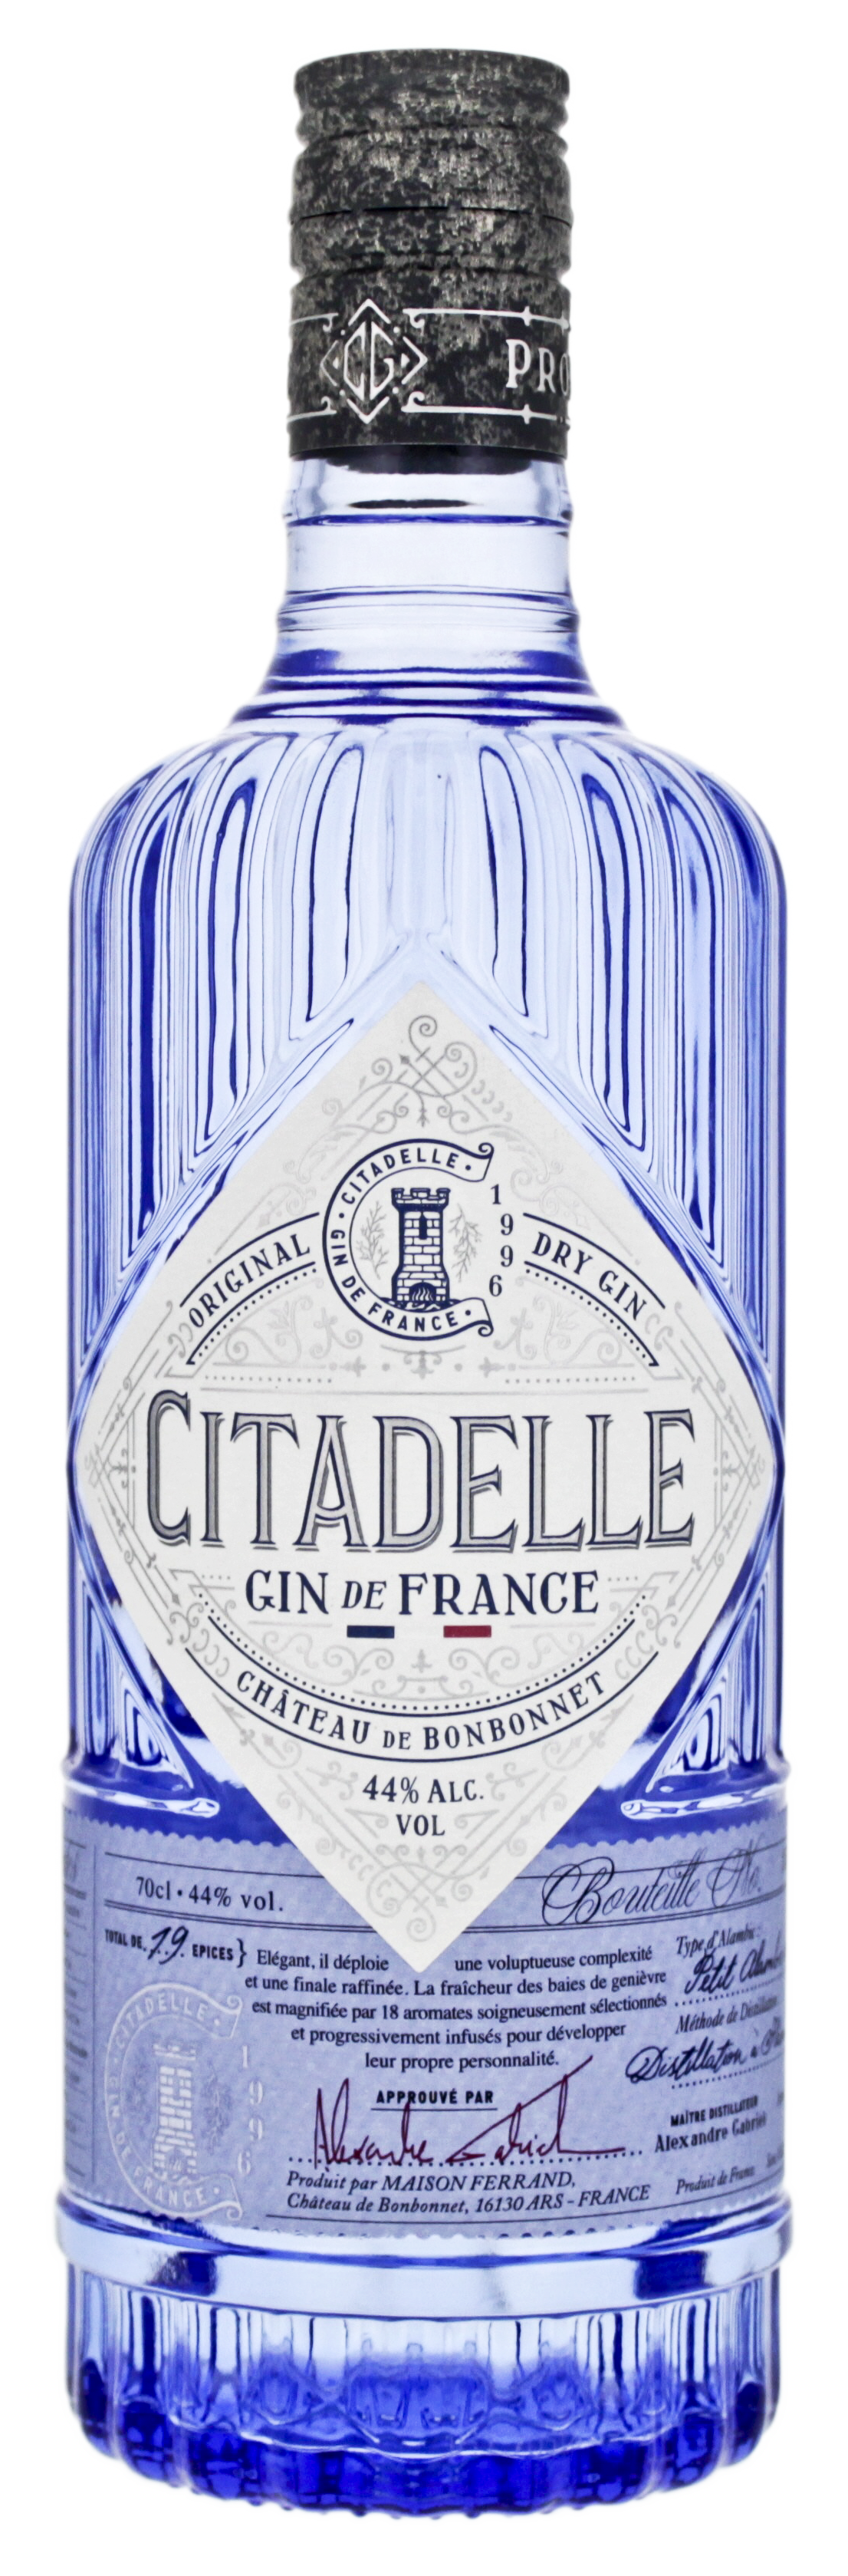 Citadelle Gin de France Original 44% 0,7l